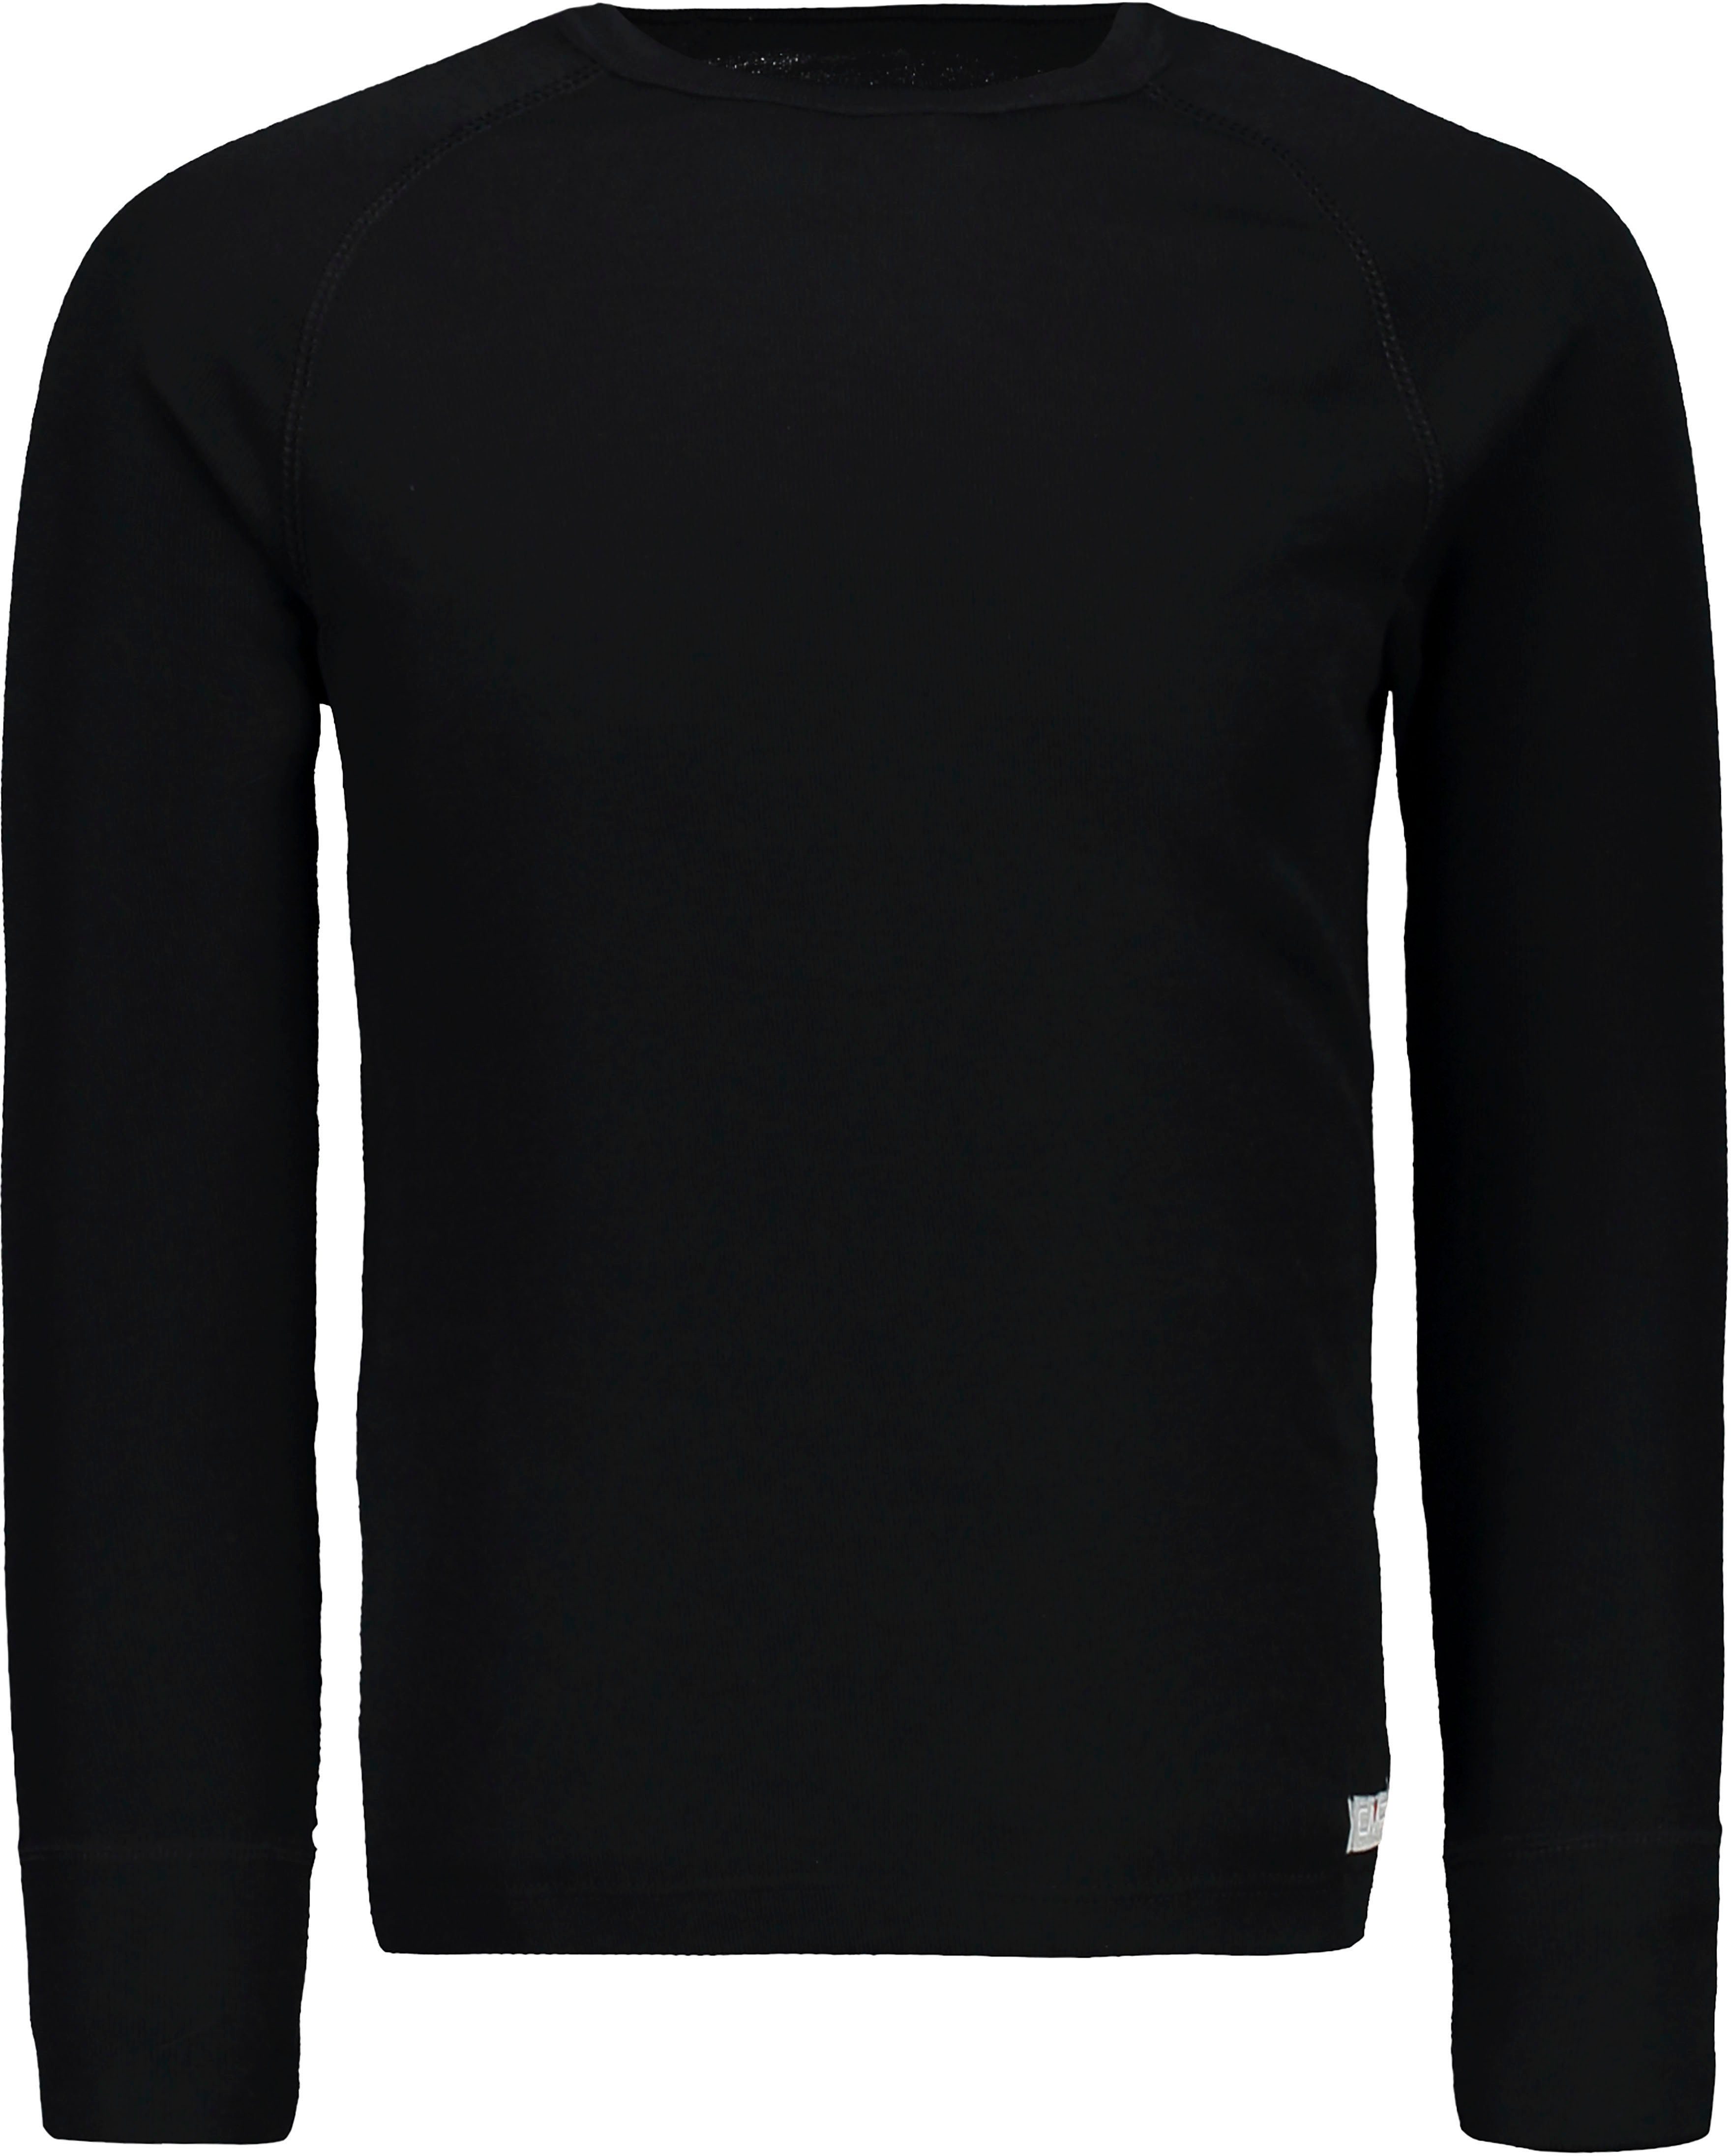 (mit - U901 Thermounterhose) Atmungsaktiv black für schnelltrocknend Thermounterhemd CMP & Kinder Skiwäsche-Set